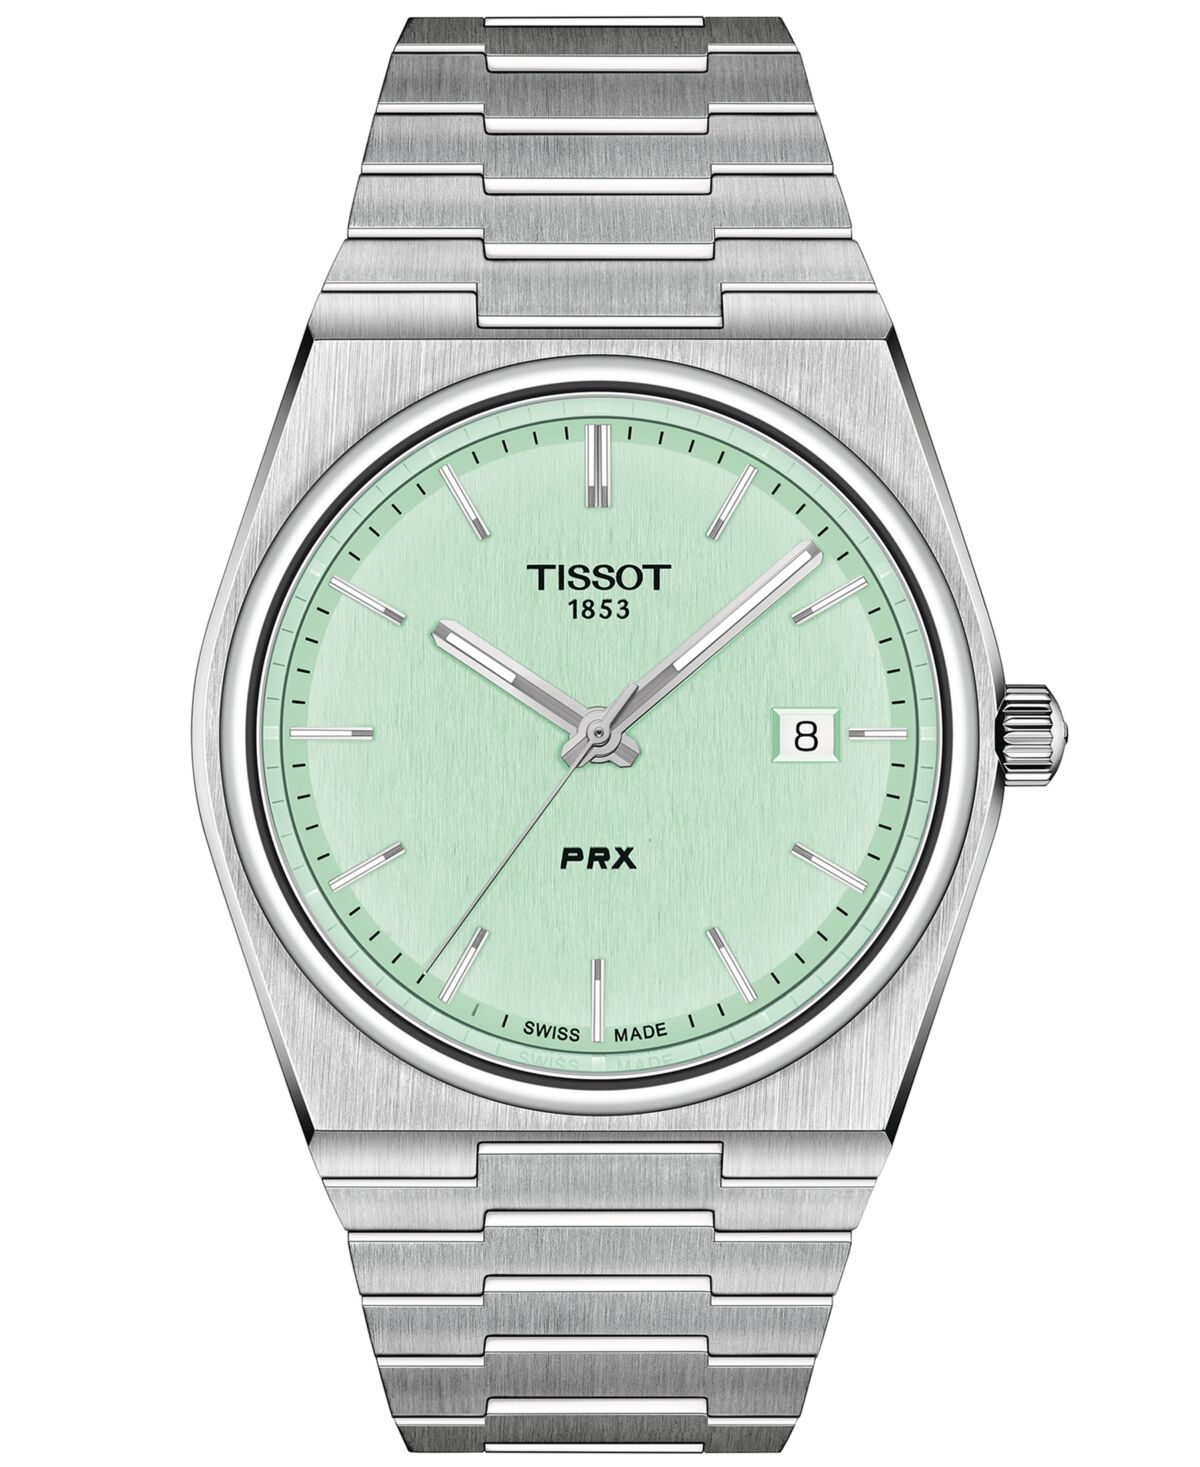 Tissot Men's Swiss Prx Stainless Steel Bracelet Watch 40mm - Grey